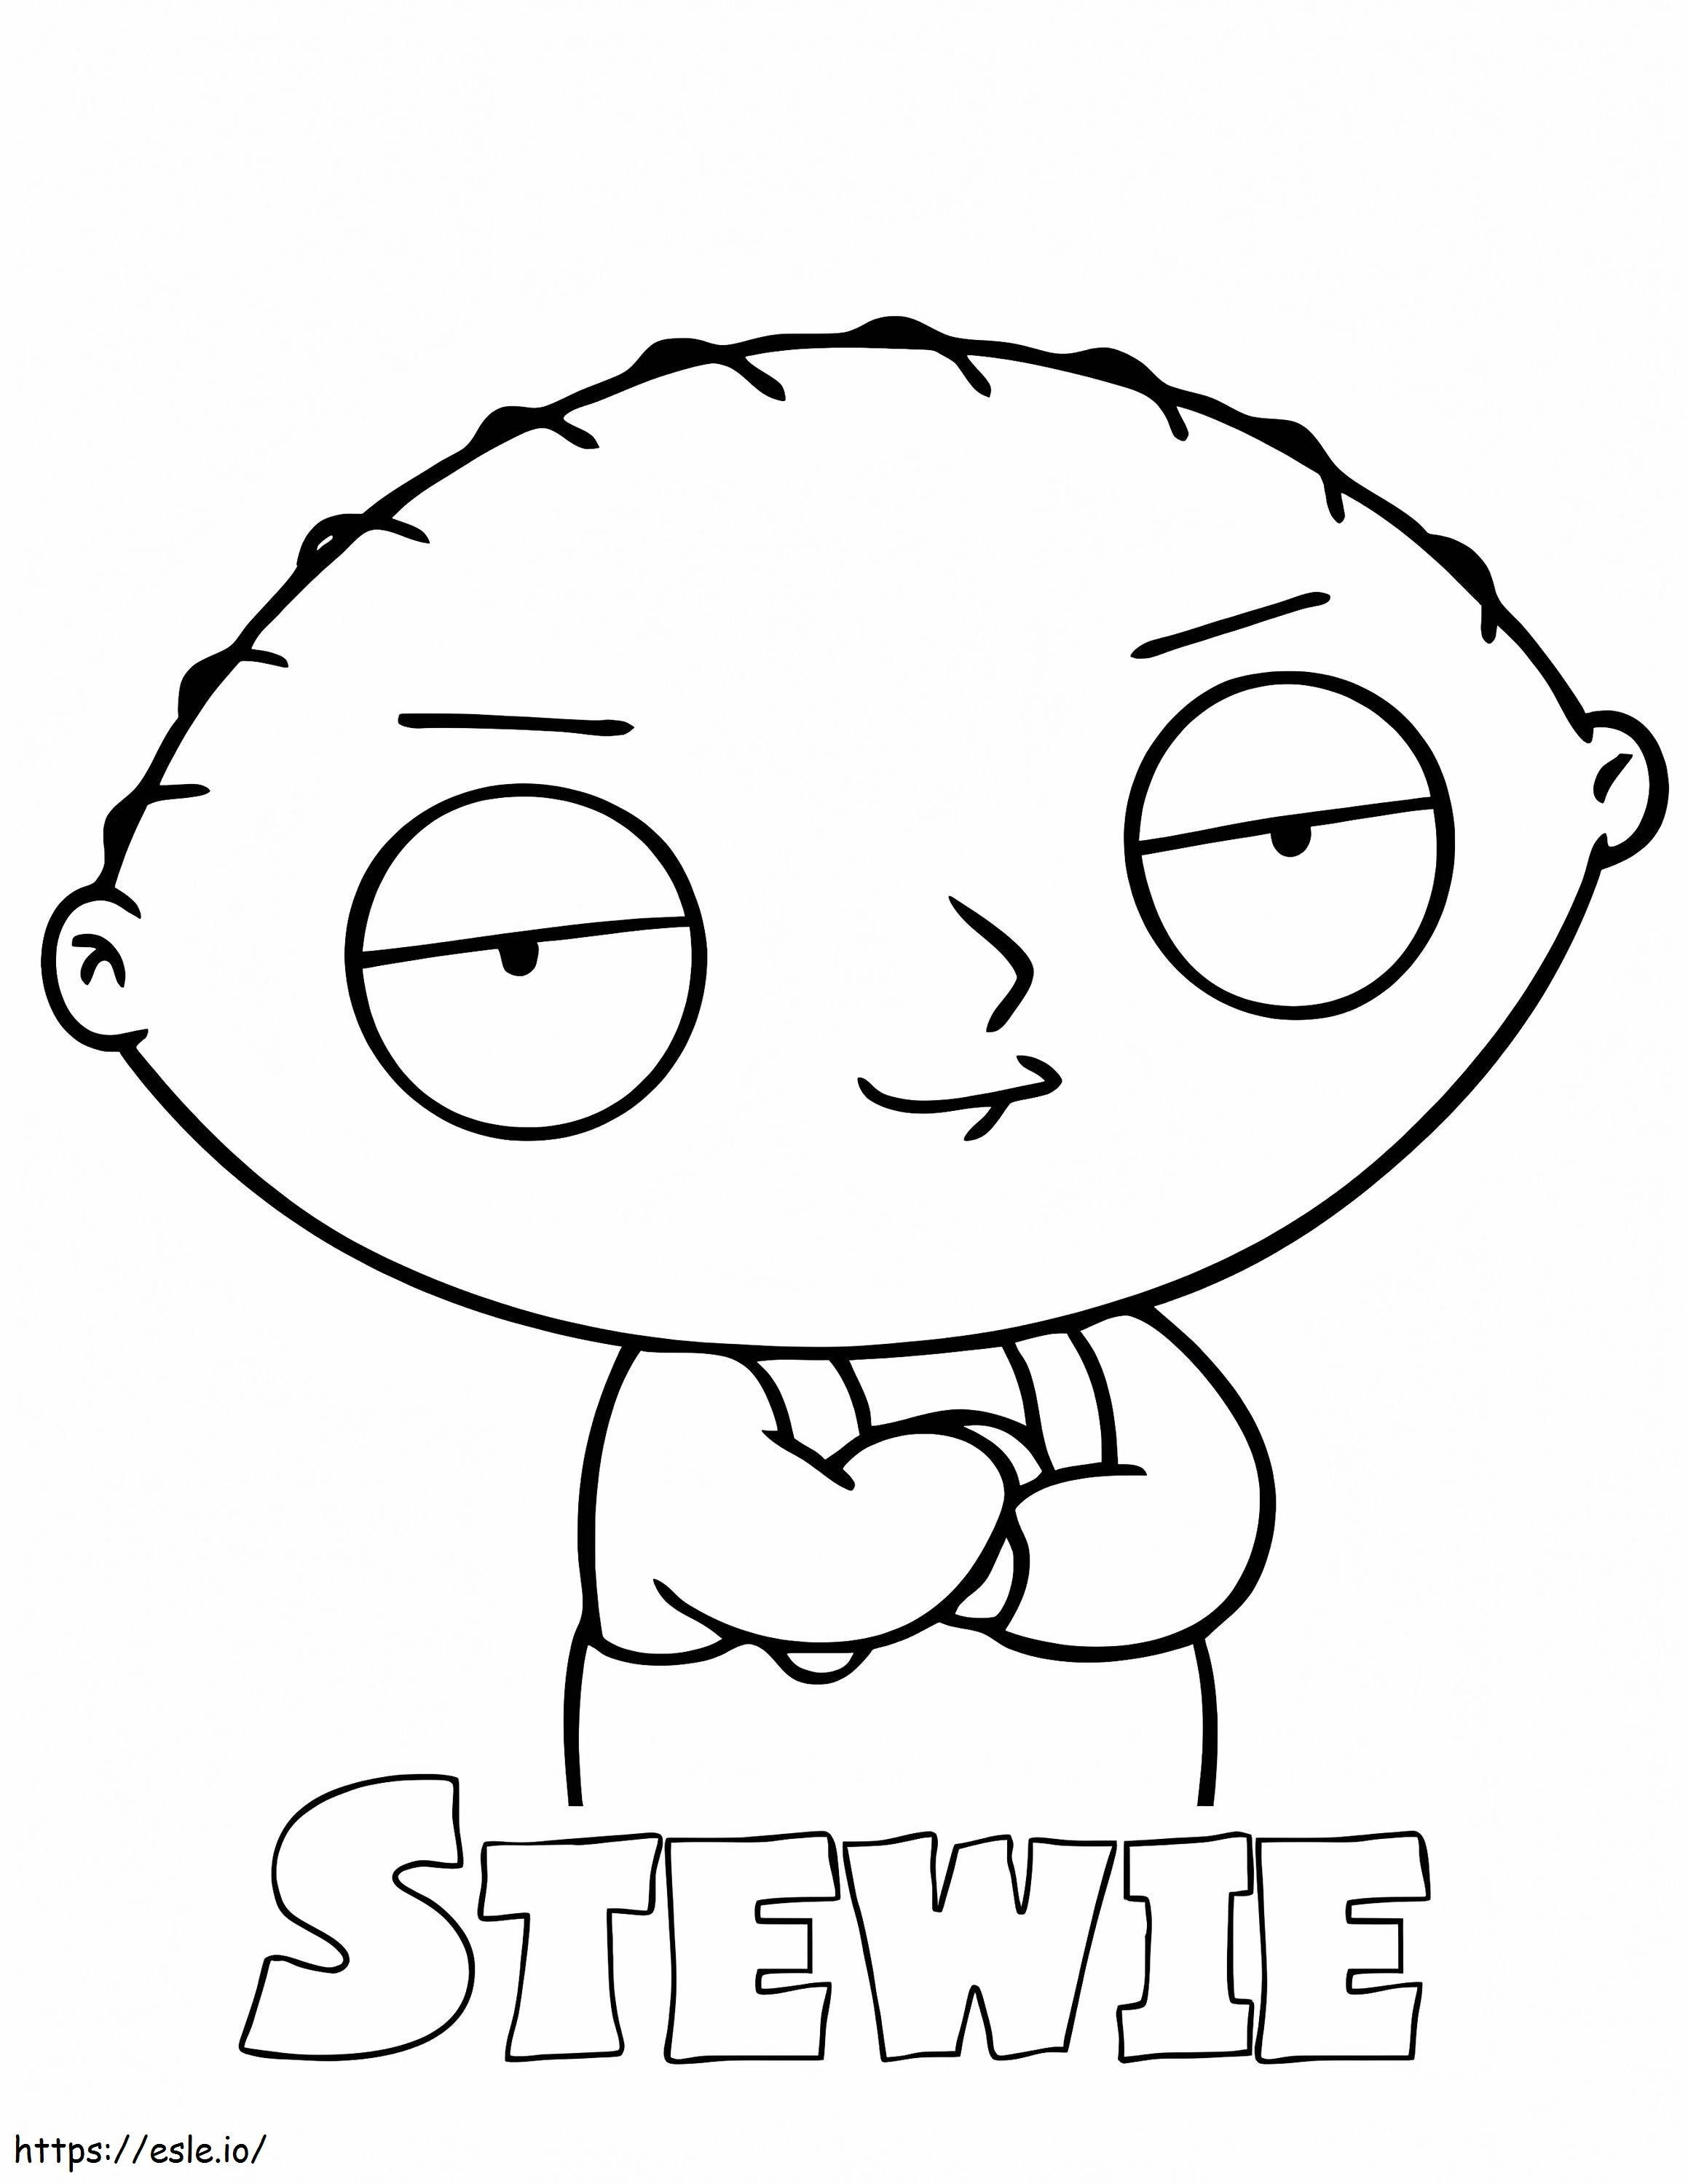 Stewie Griffin 1 ausmalbilder